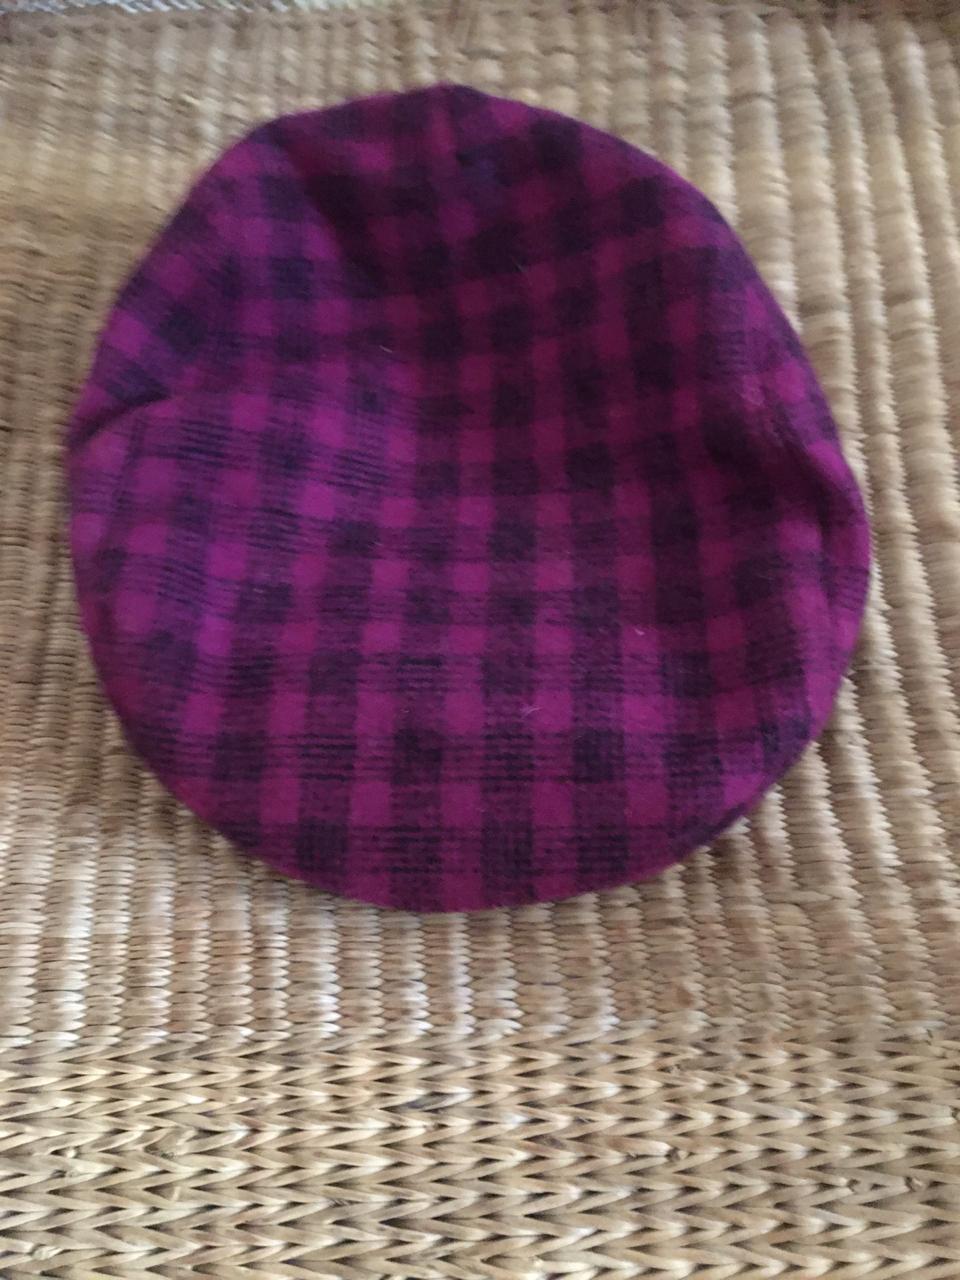 Vintage Purple & Black Gingham Print Flat top Cap